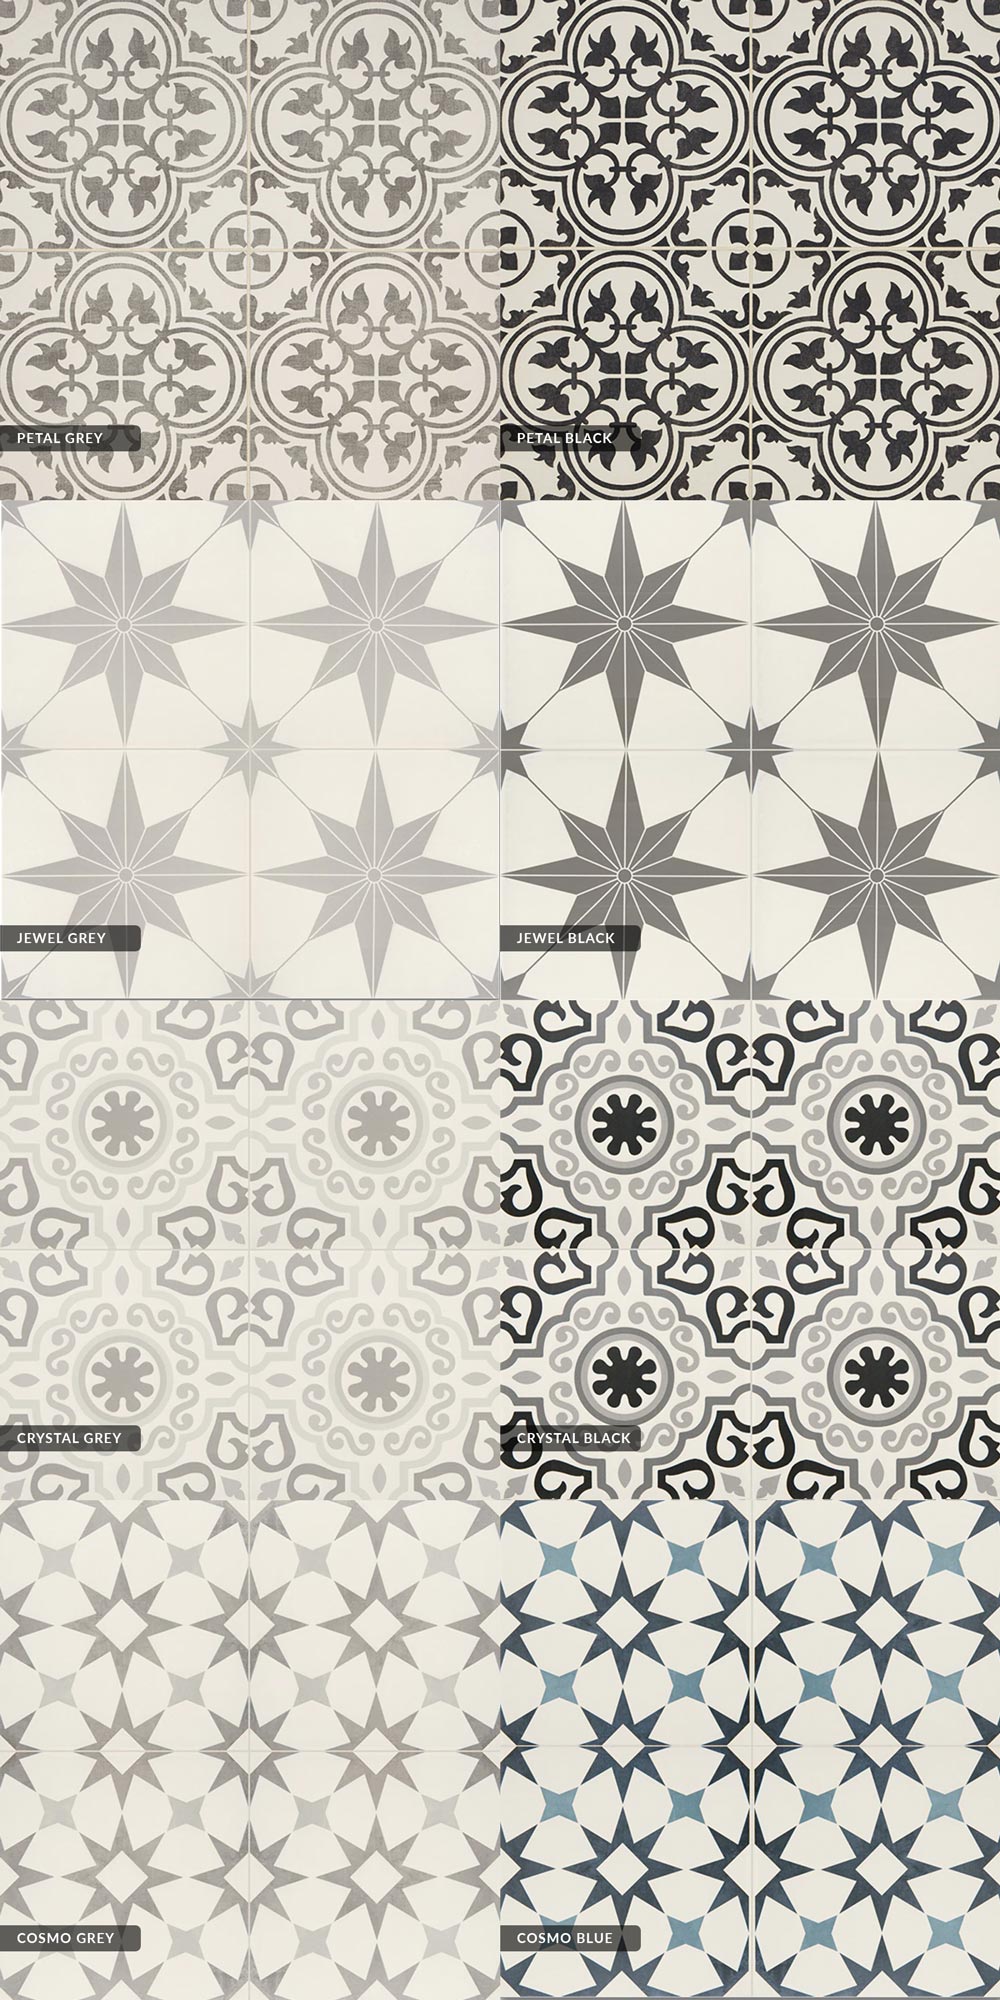 Daltile Memoir Glazed Ceramic Tile for Backsplashes and Floors Image